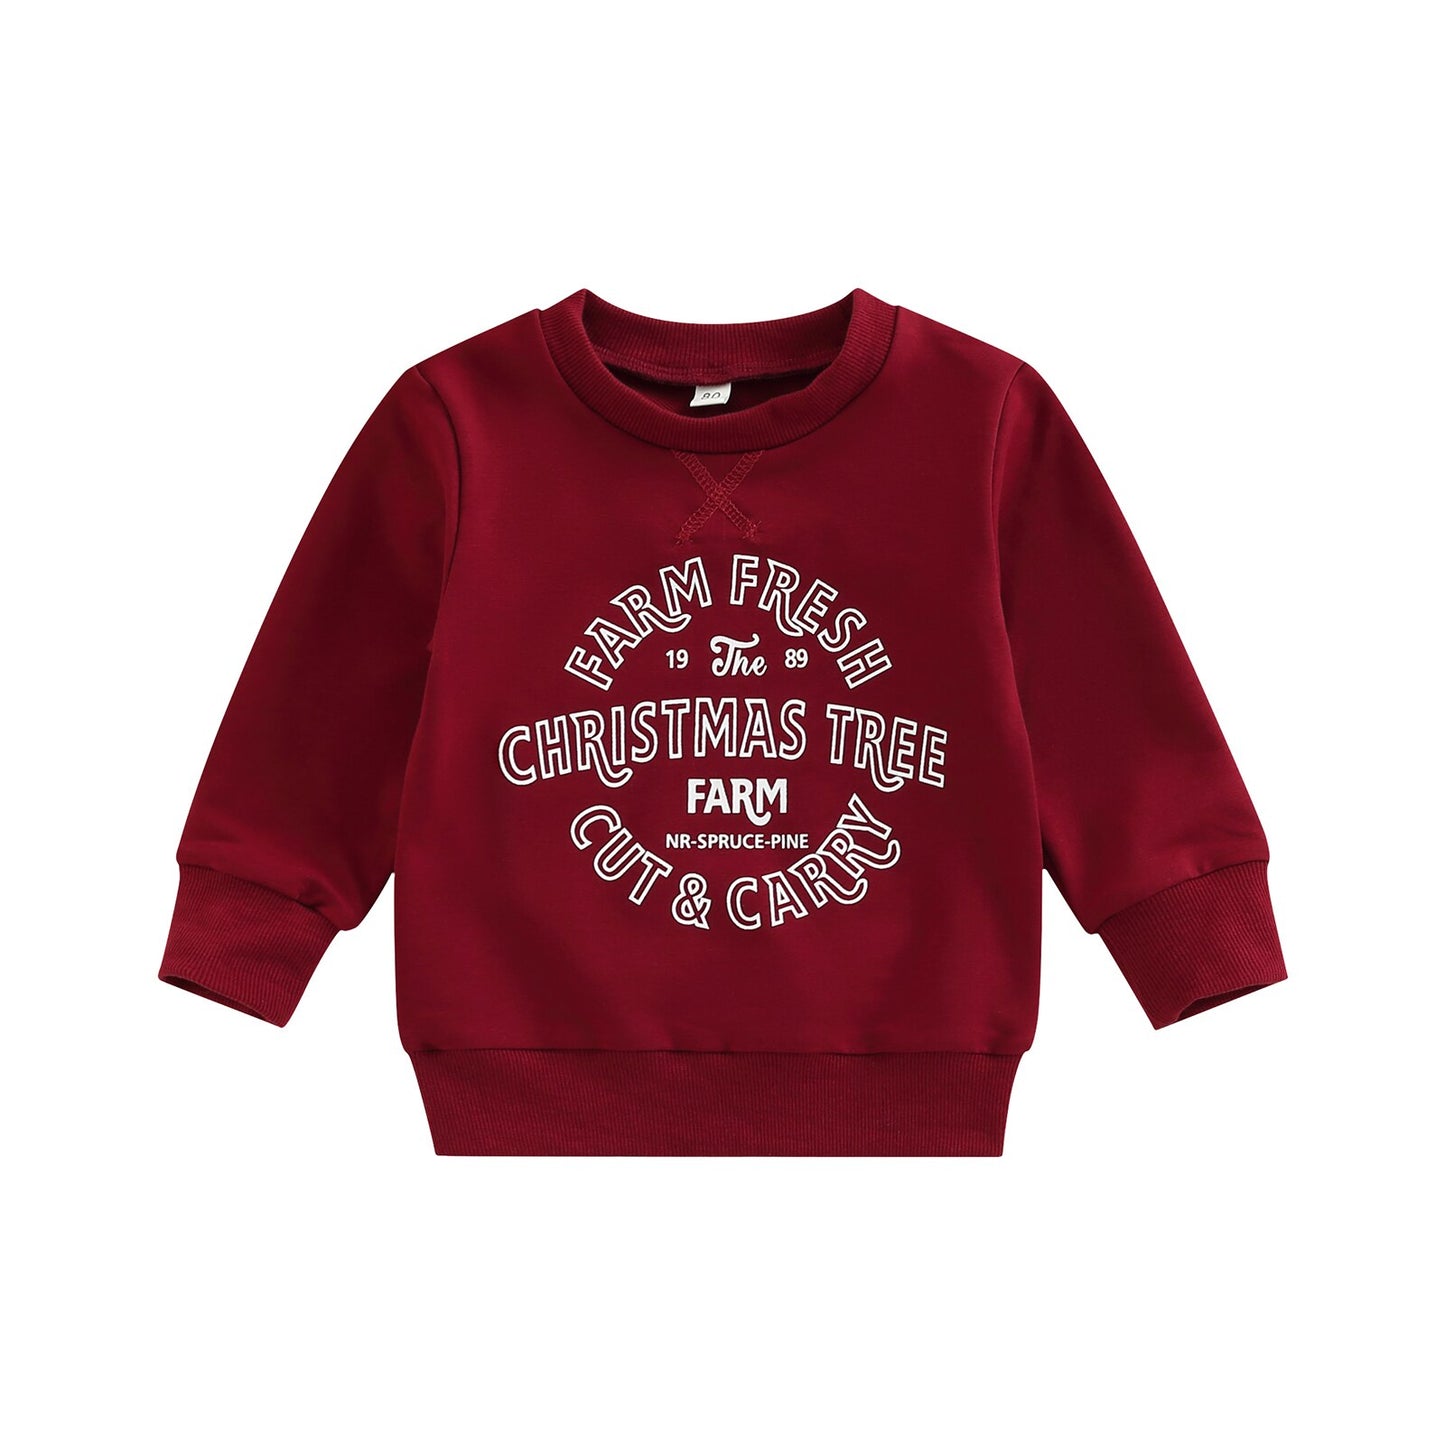 “Christmas Tree Farm” Baby Girls Boys Sweatshirt